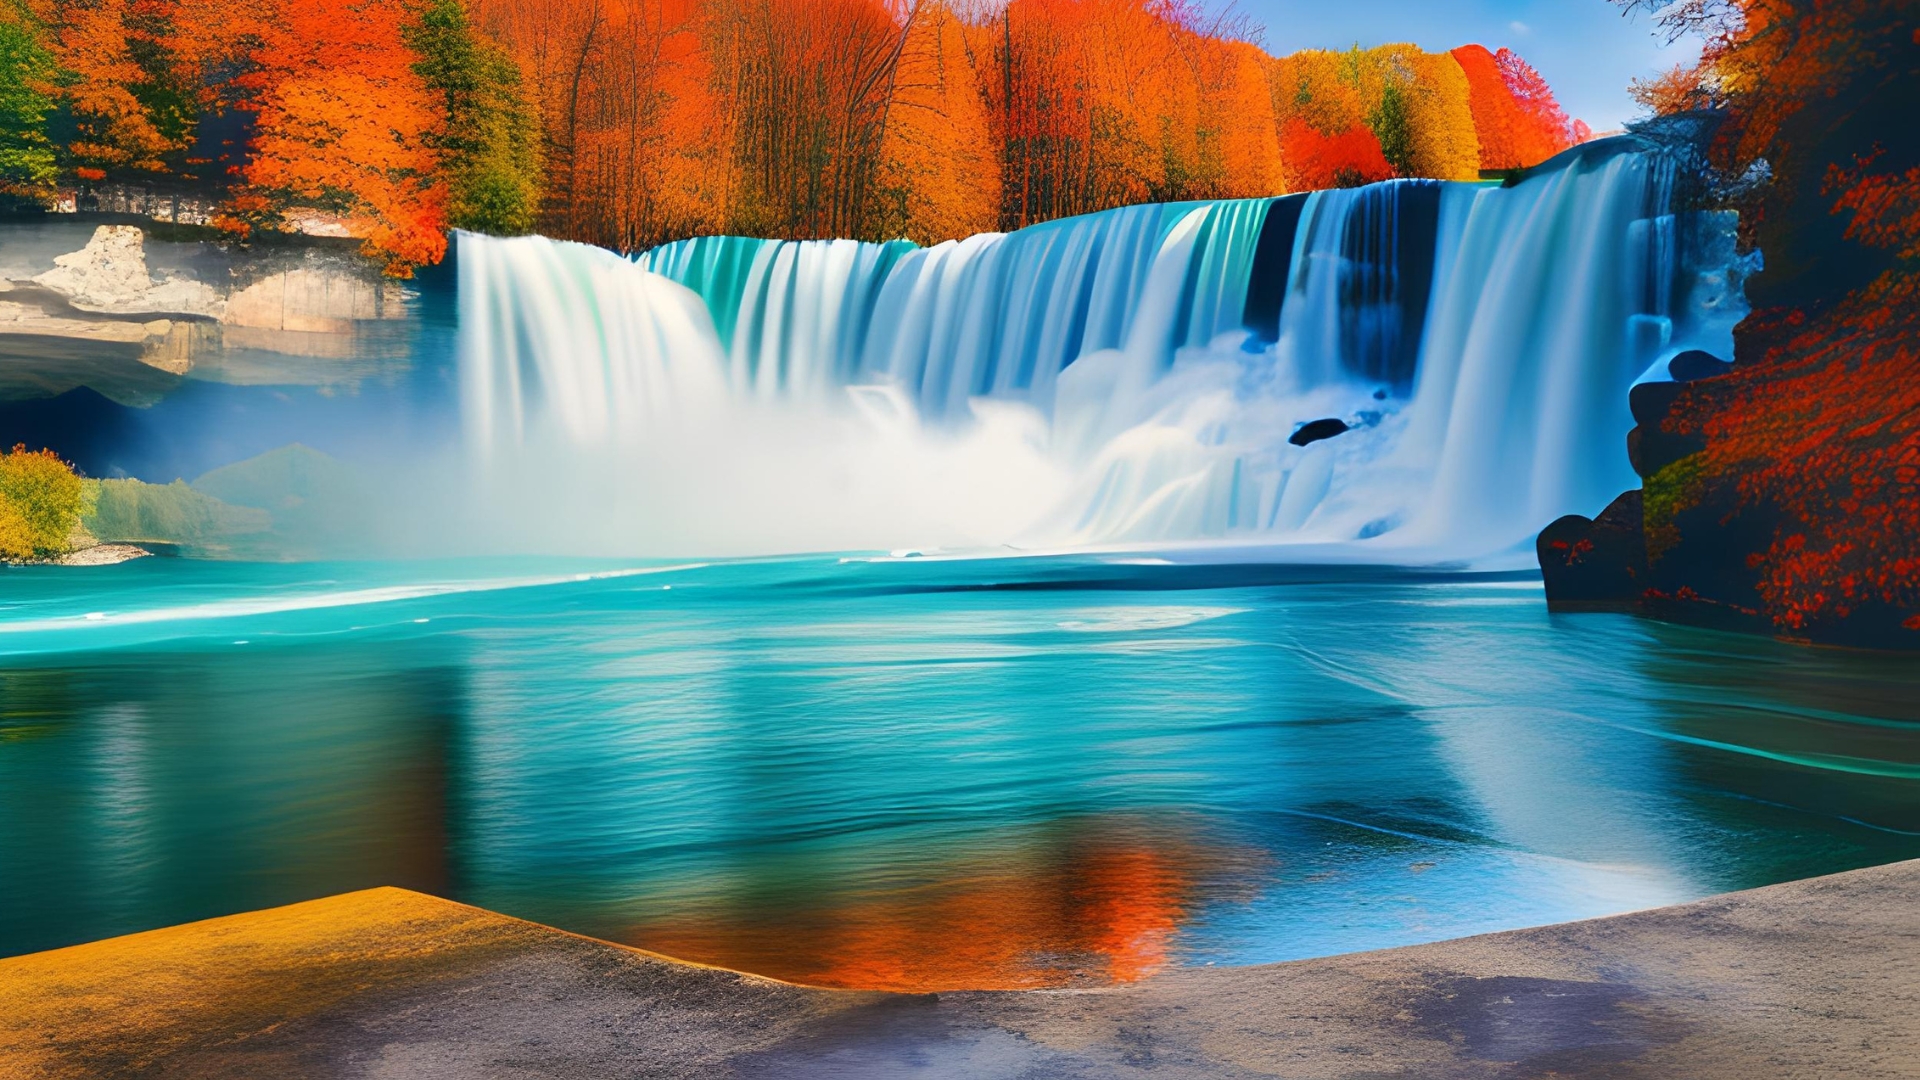 Keajaiban Air Terjun Niagara: Merasakan Keindahan yang Menggelegar di Tengah Alam